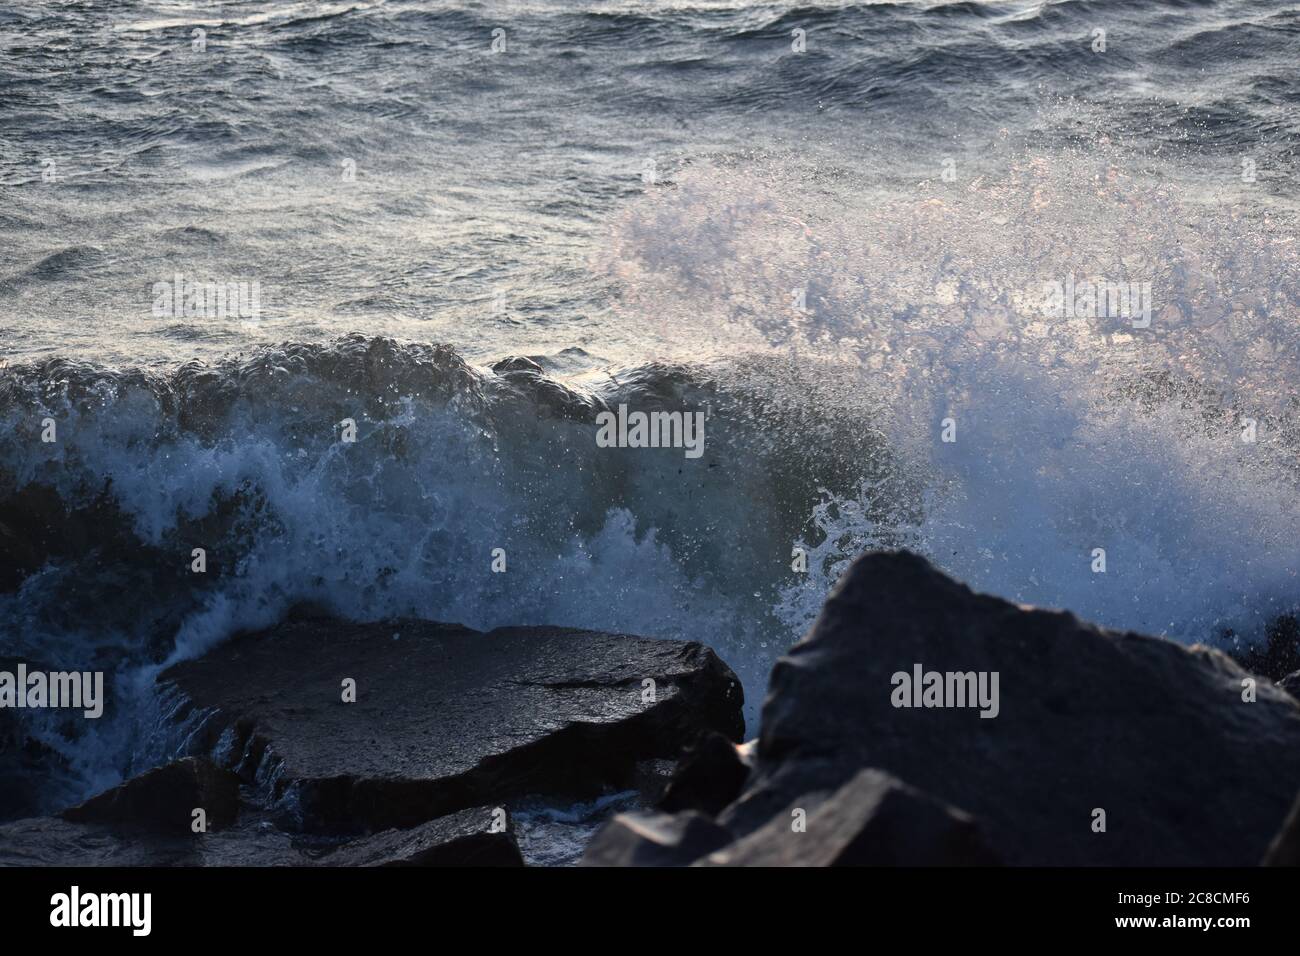 Waves crash on rocks Stock Photo